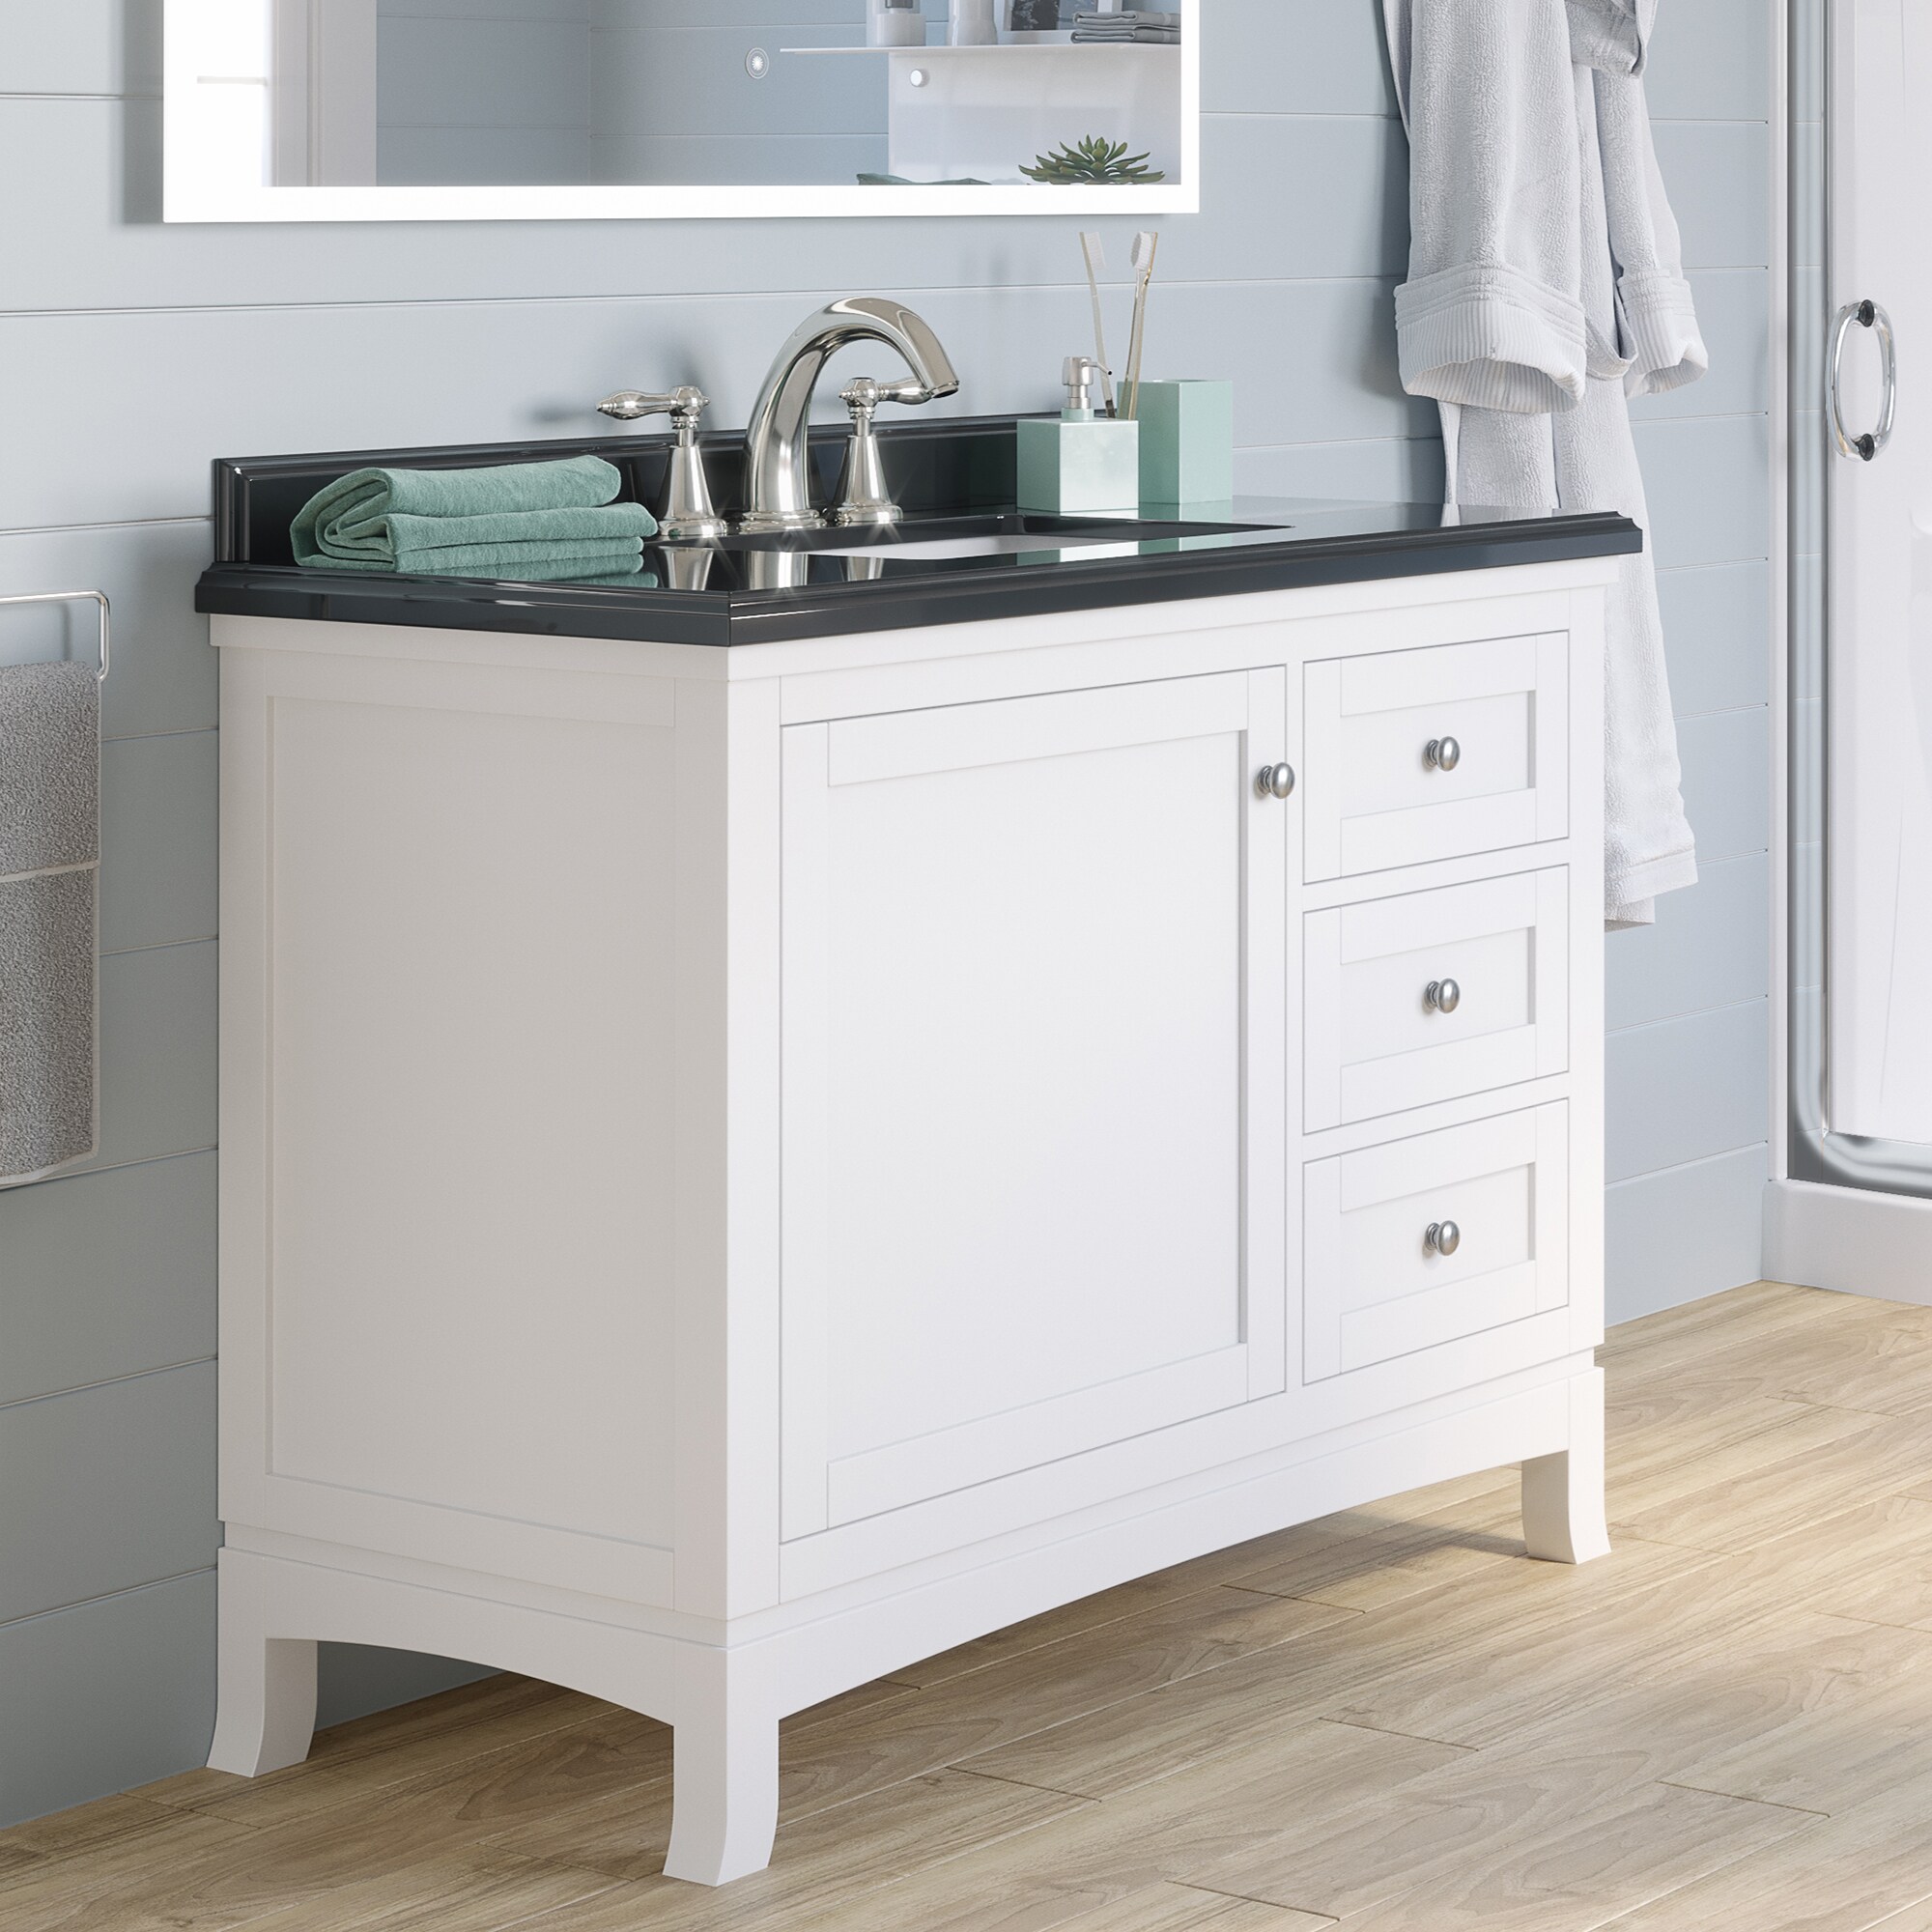 OVE Decors Sophia 42-in White Undermount Single Sink Bathroom Vanity ...